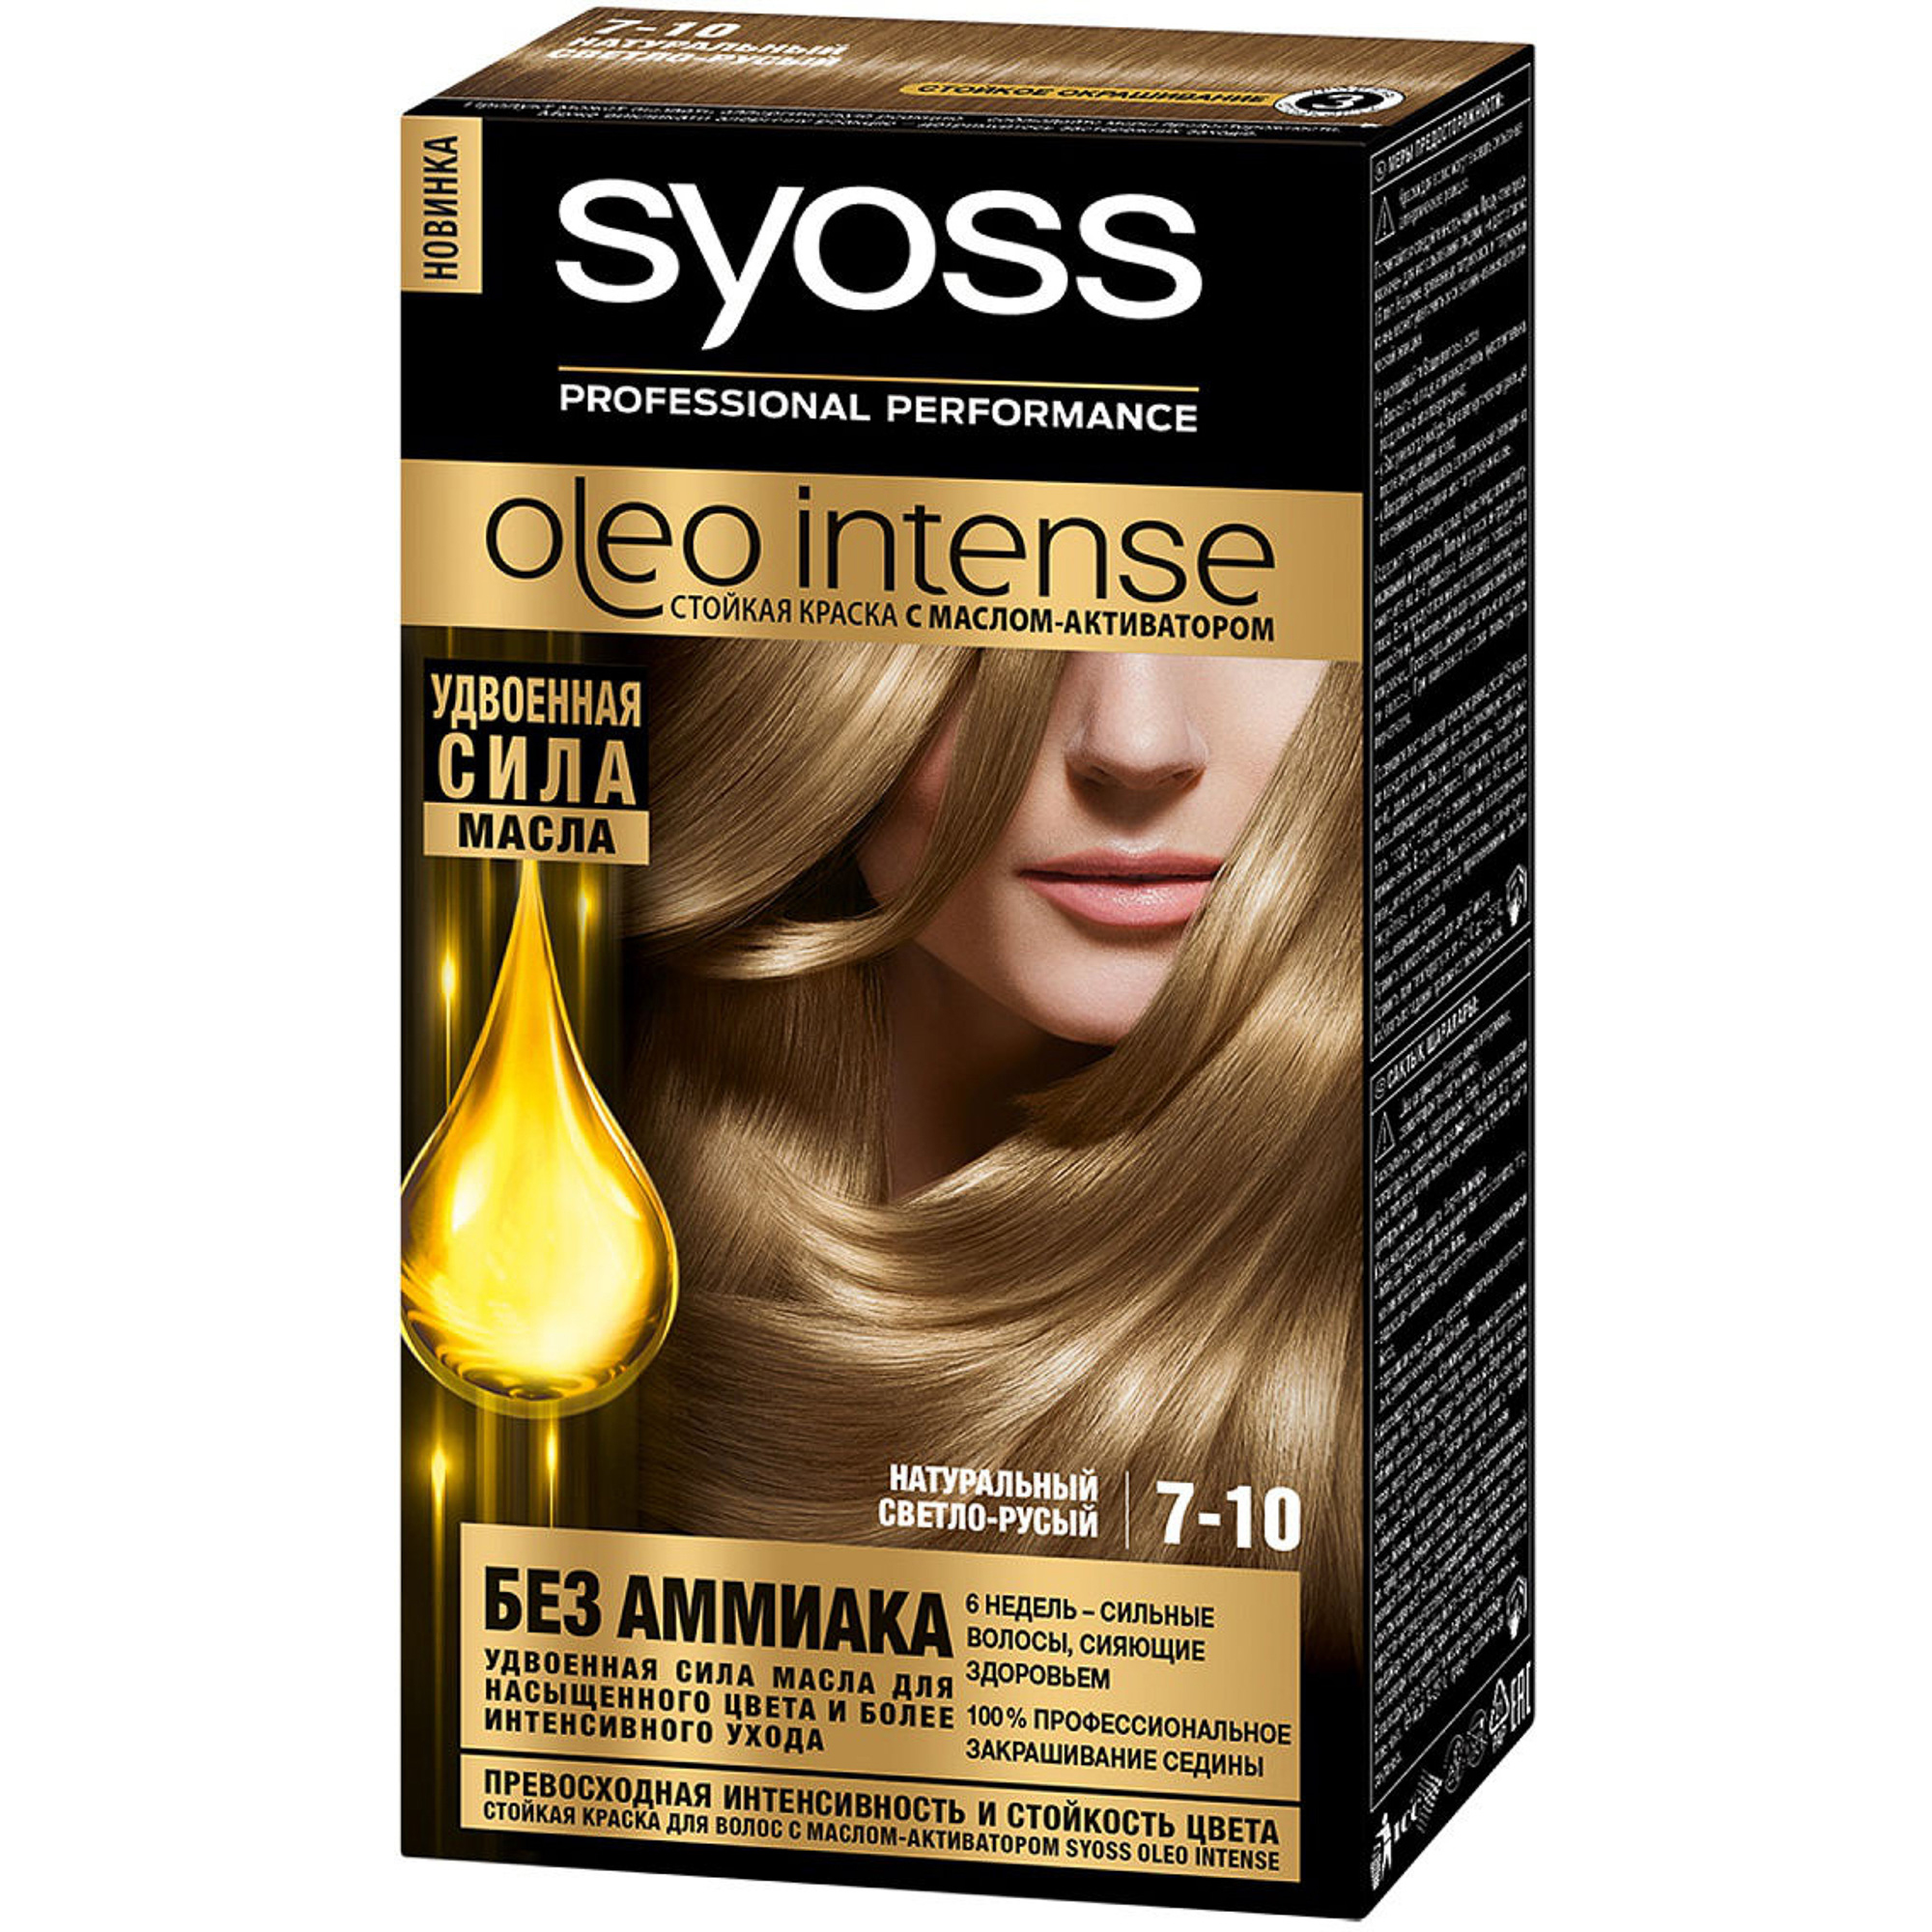 Краска для волос Syoss Oleo Intense 7-10 Натуральный светло-русый syoss oleo intense краска для волос 7 10 натуральный светло русый 115 мл